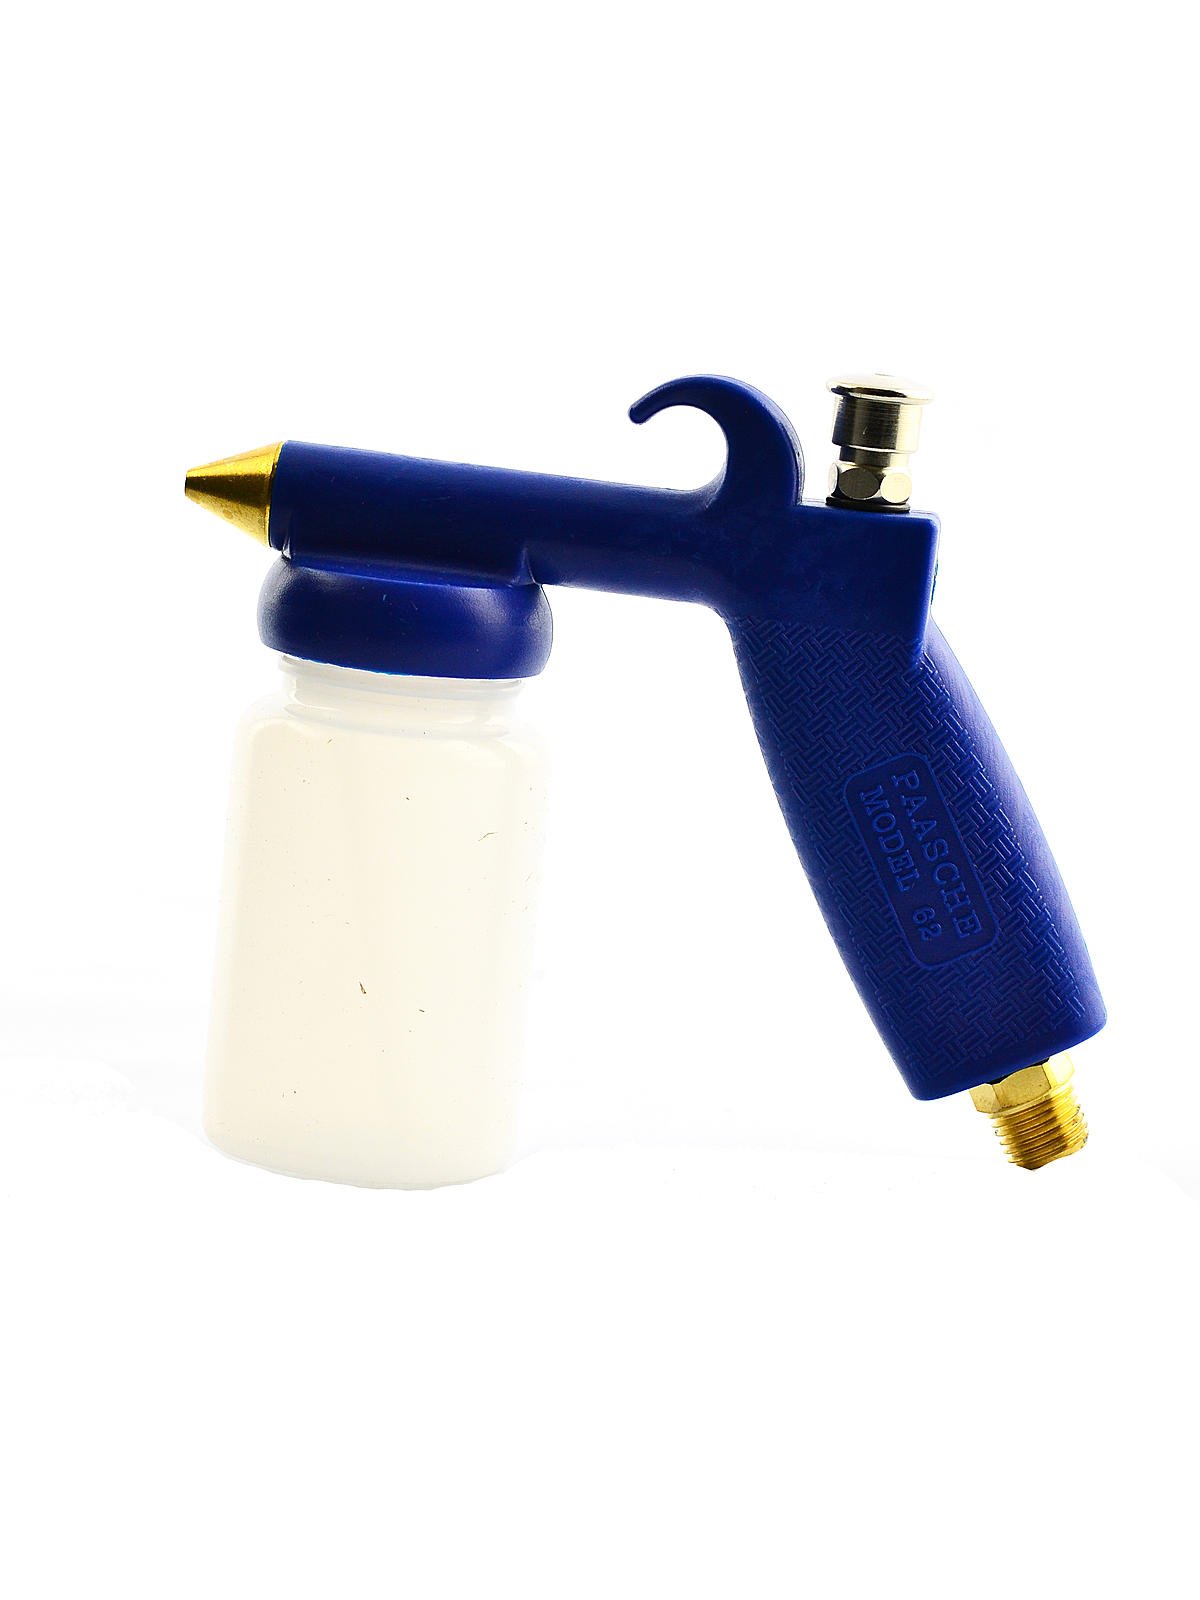 no. 62 Sprayer - Low Pressure For Light Fluids